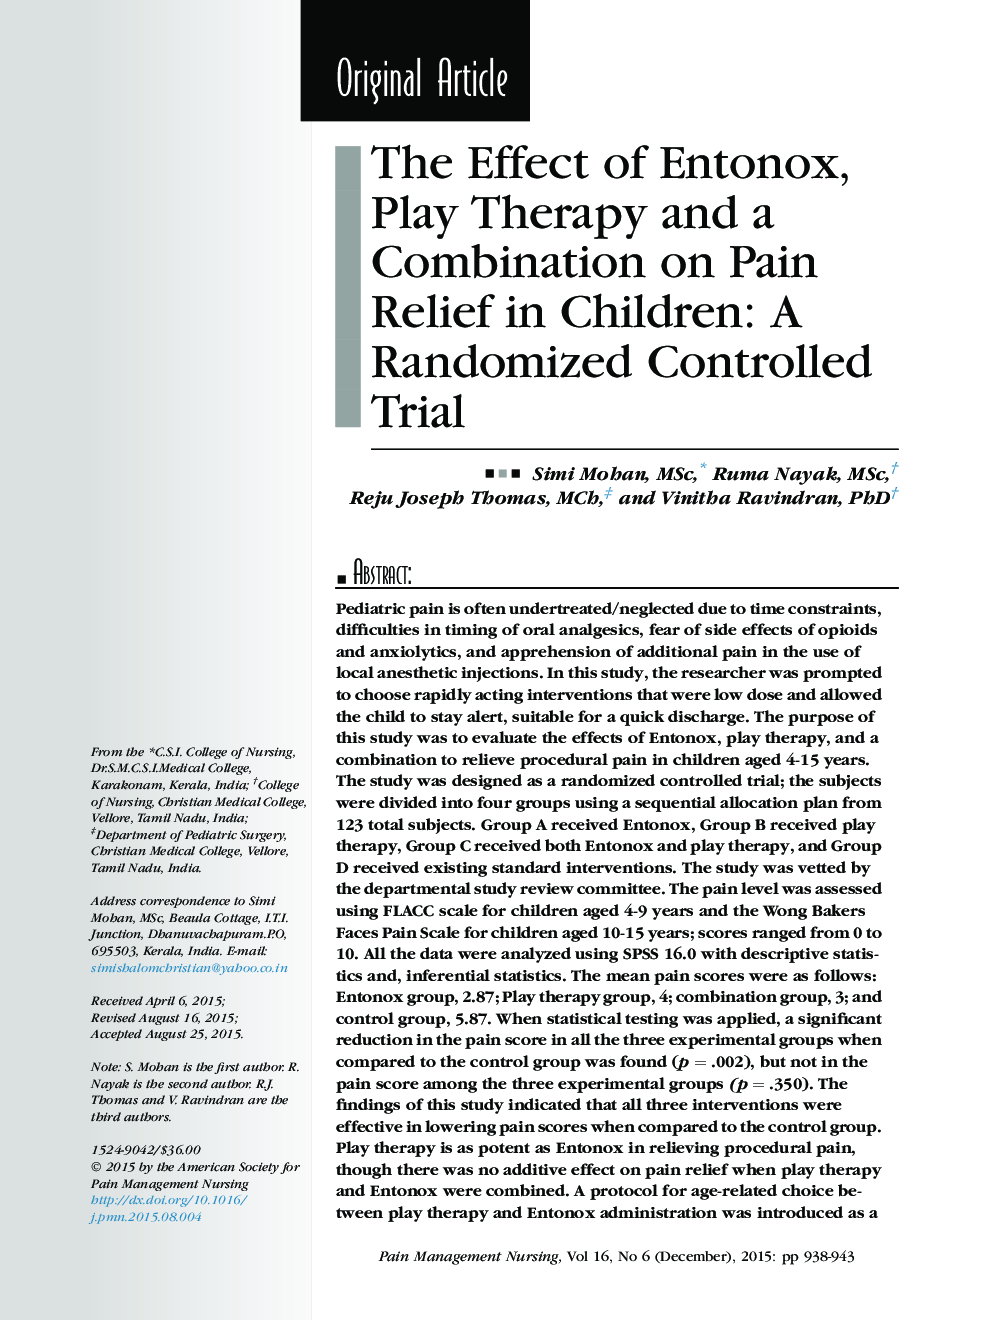 مقاله اصلی اثر اننتوکس، درمان بازی و ترکیب آن در کاهش درد در کودکان: یک آزمایش تصادفی کنترل شده 